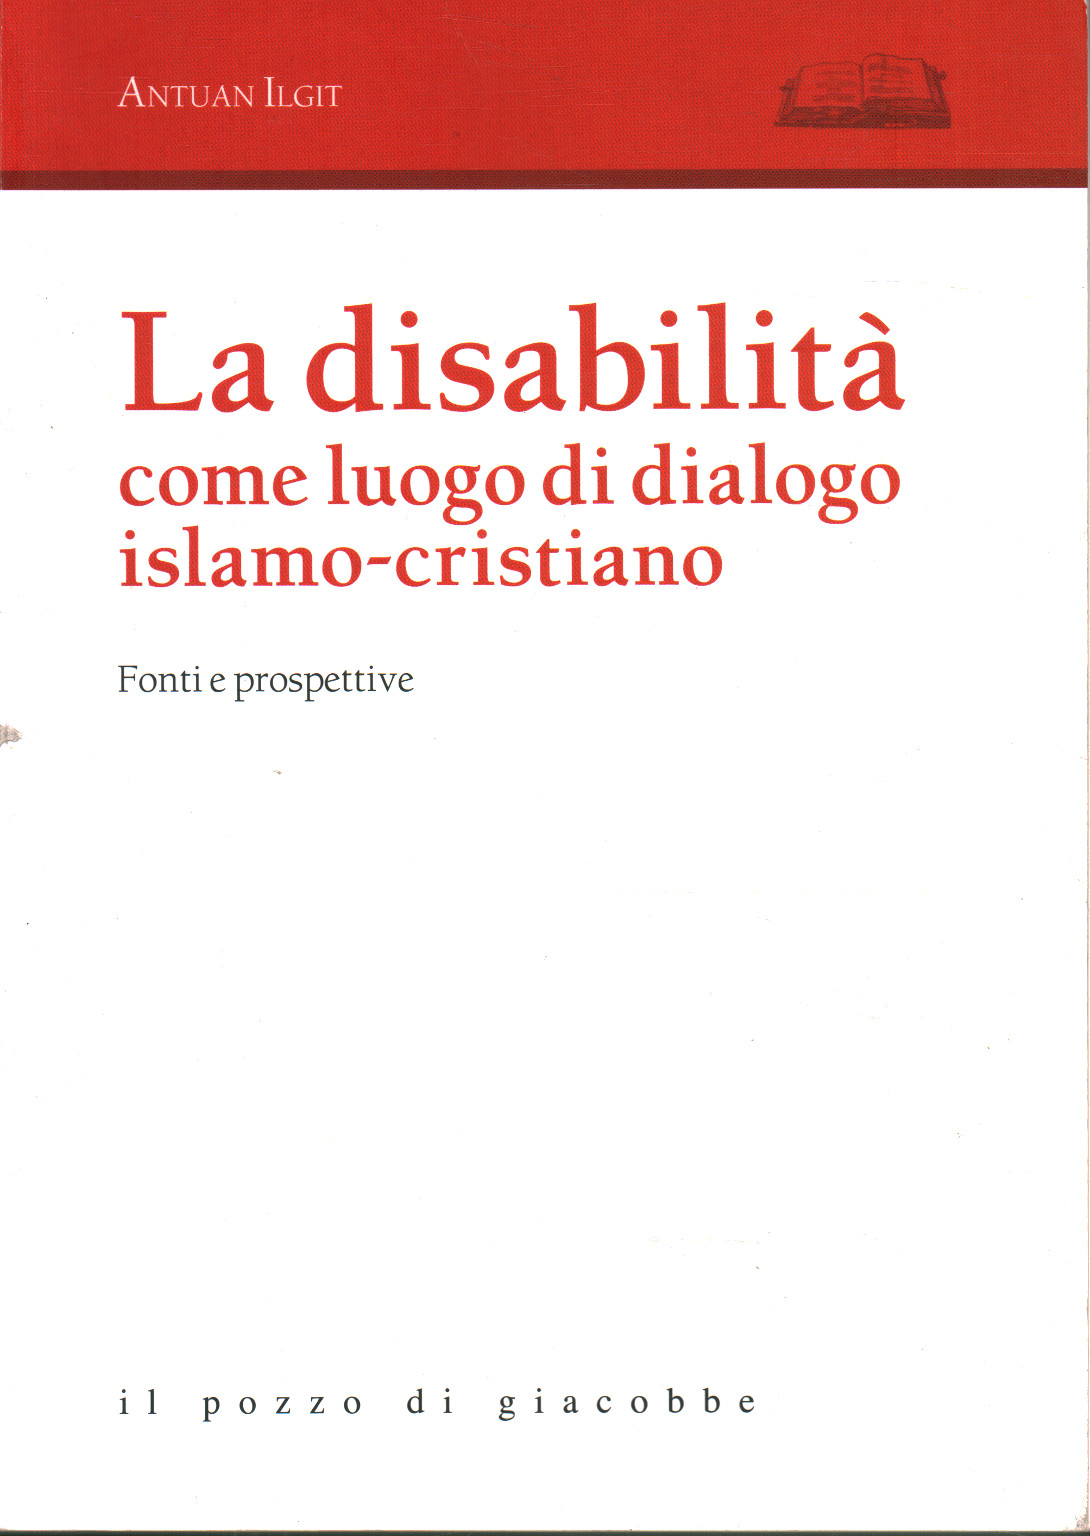 La disabilità come luogo di dialogo islamo-cristi, Antuan Ilgit